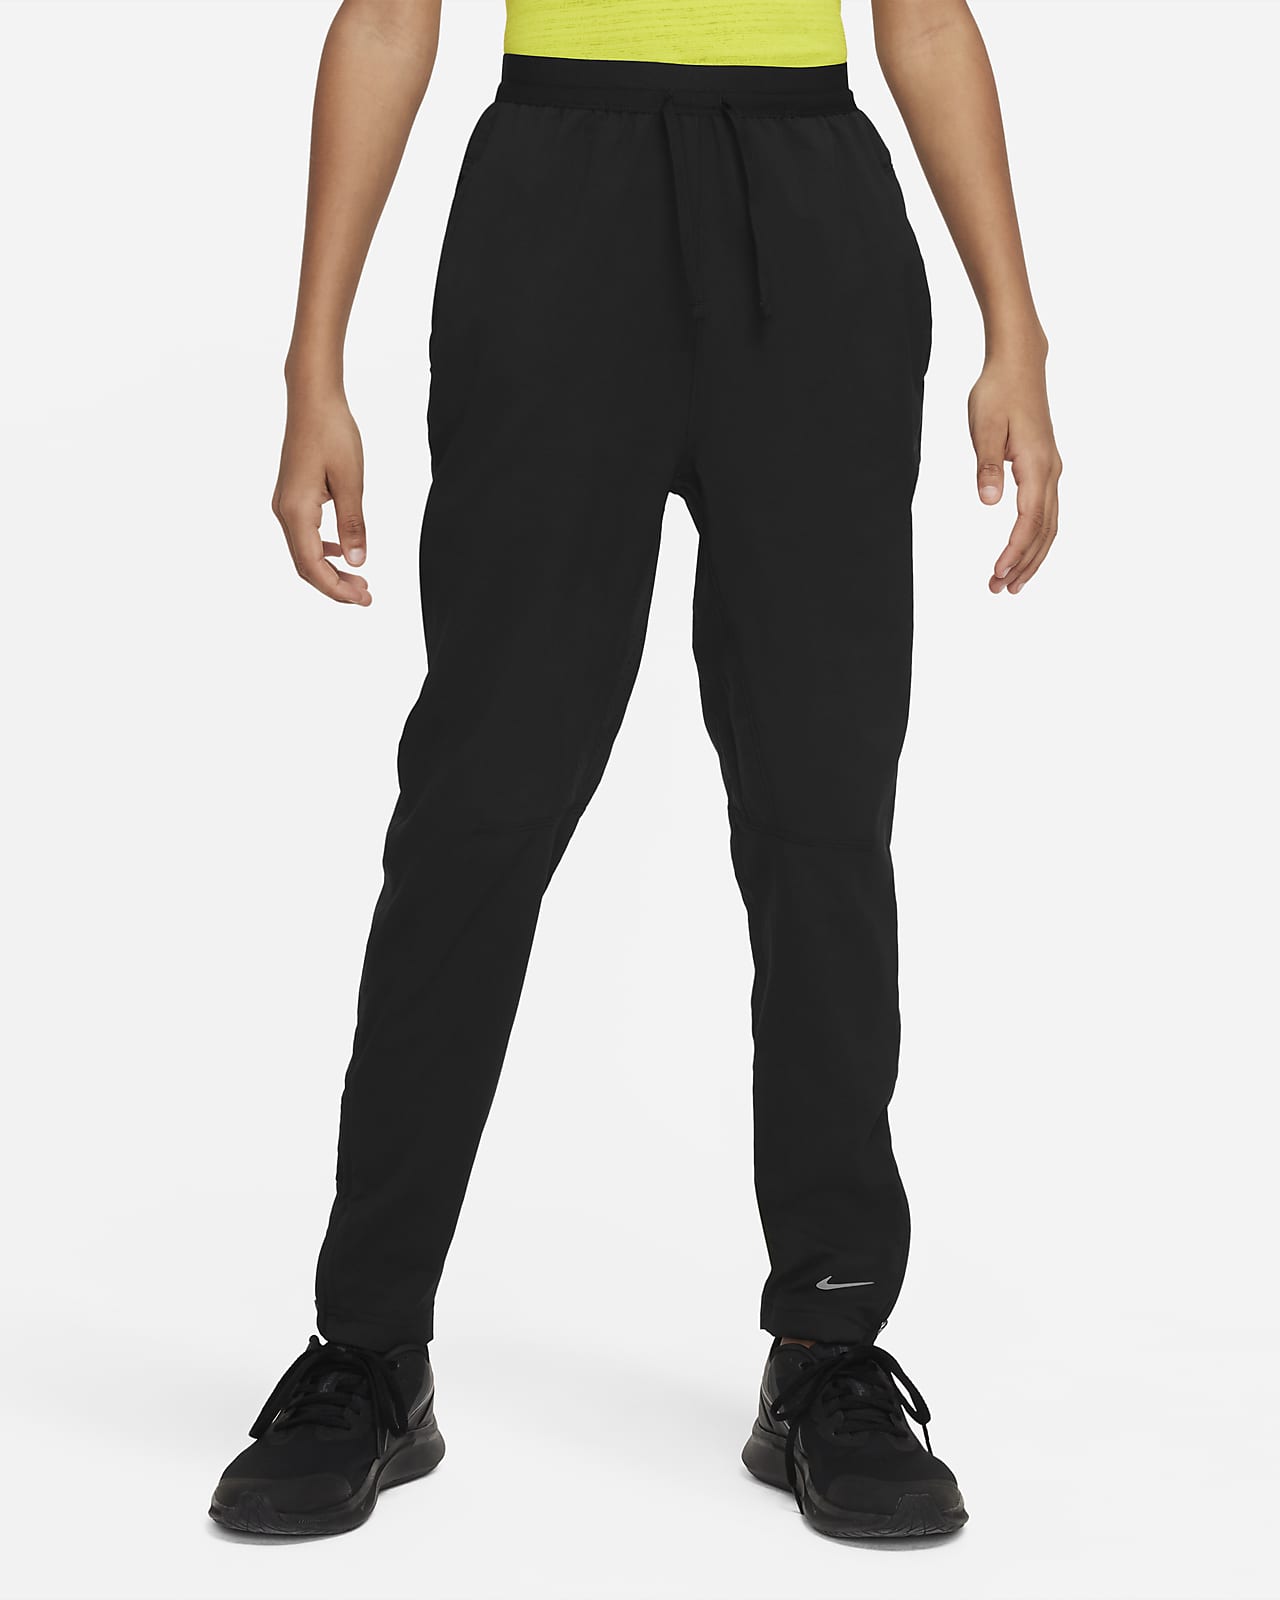 Pantaloni da training Dri-FIT Nike Multi Tech EasyOn – Ragazzo